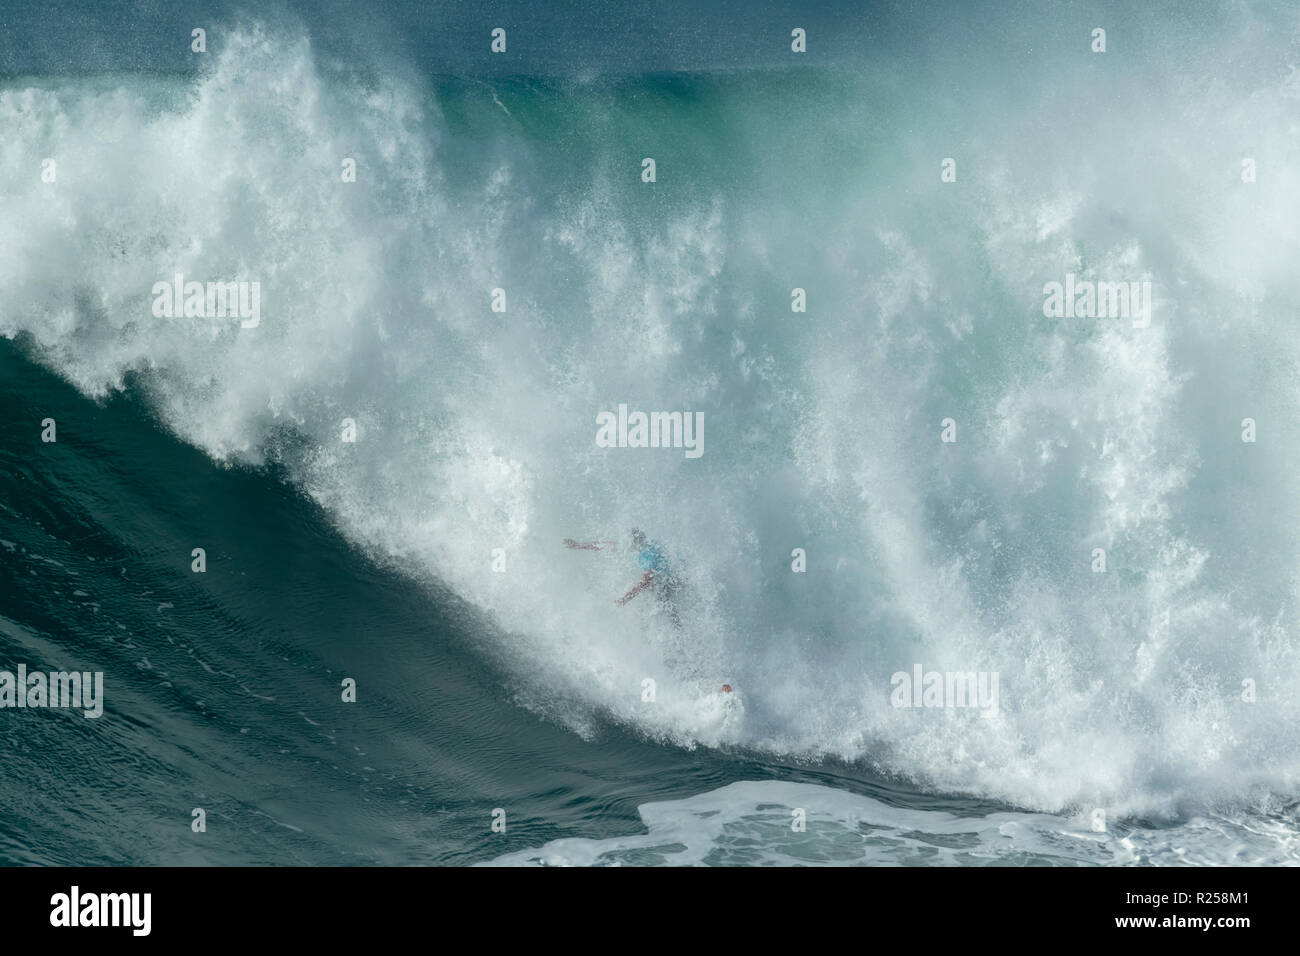 Joao de Macedo Surfen bei Nazaré Herausforderung der WSL Stockfoto